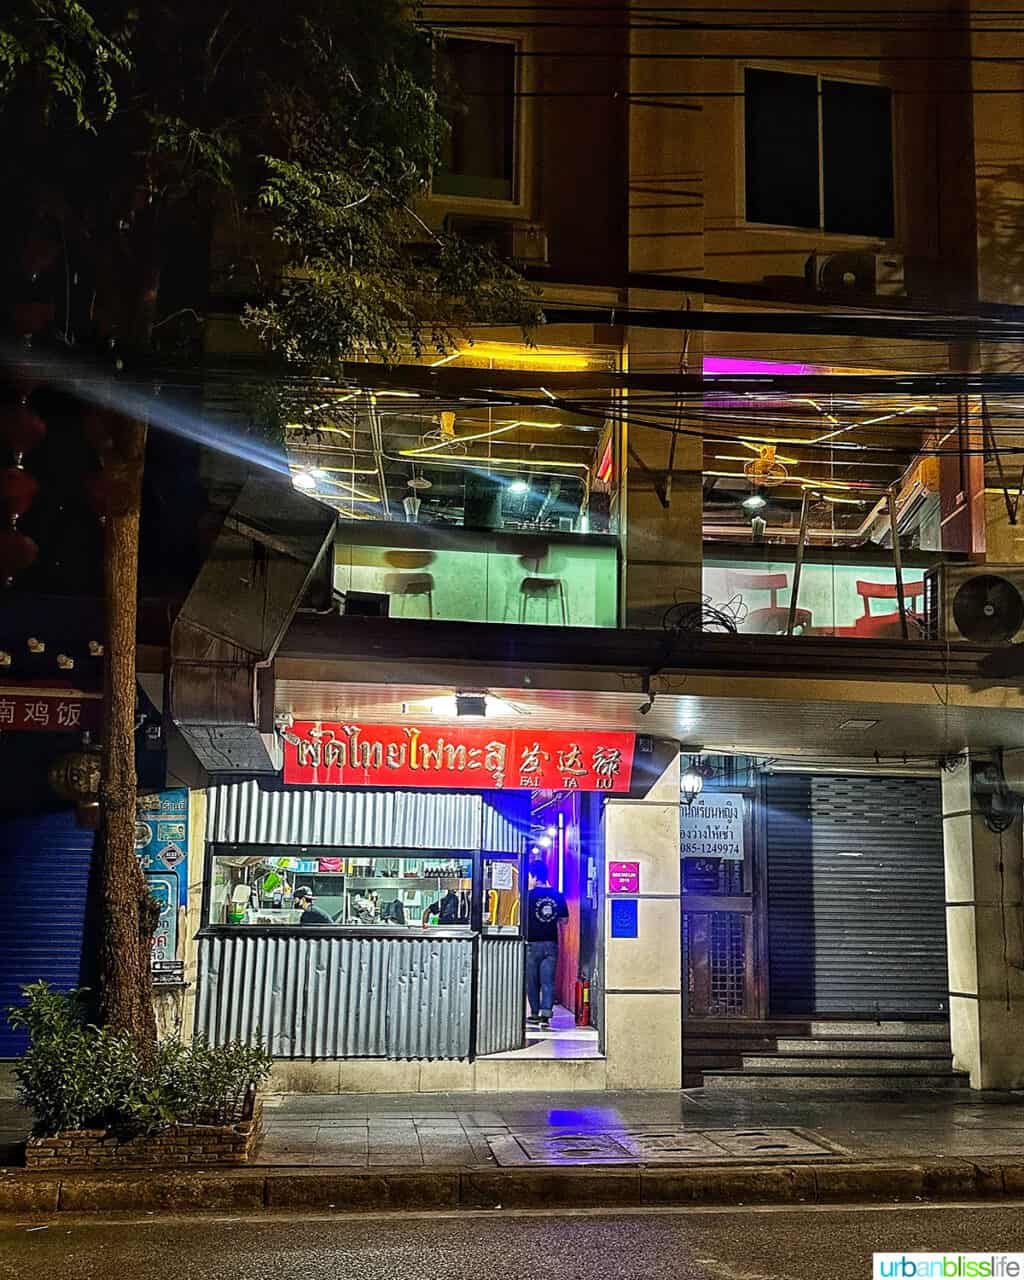 exterior of Pad Thai Fai Ta Lu restaurant in Bangkok, Thailand.